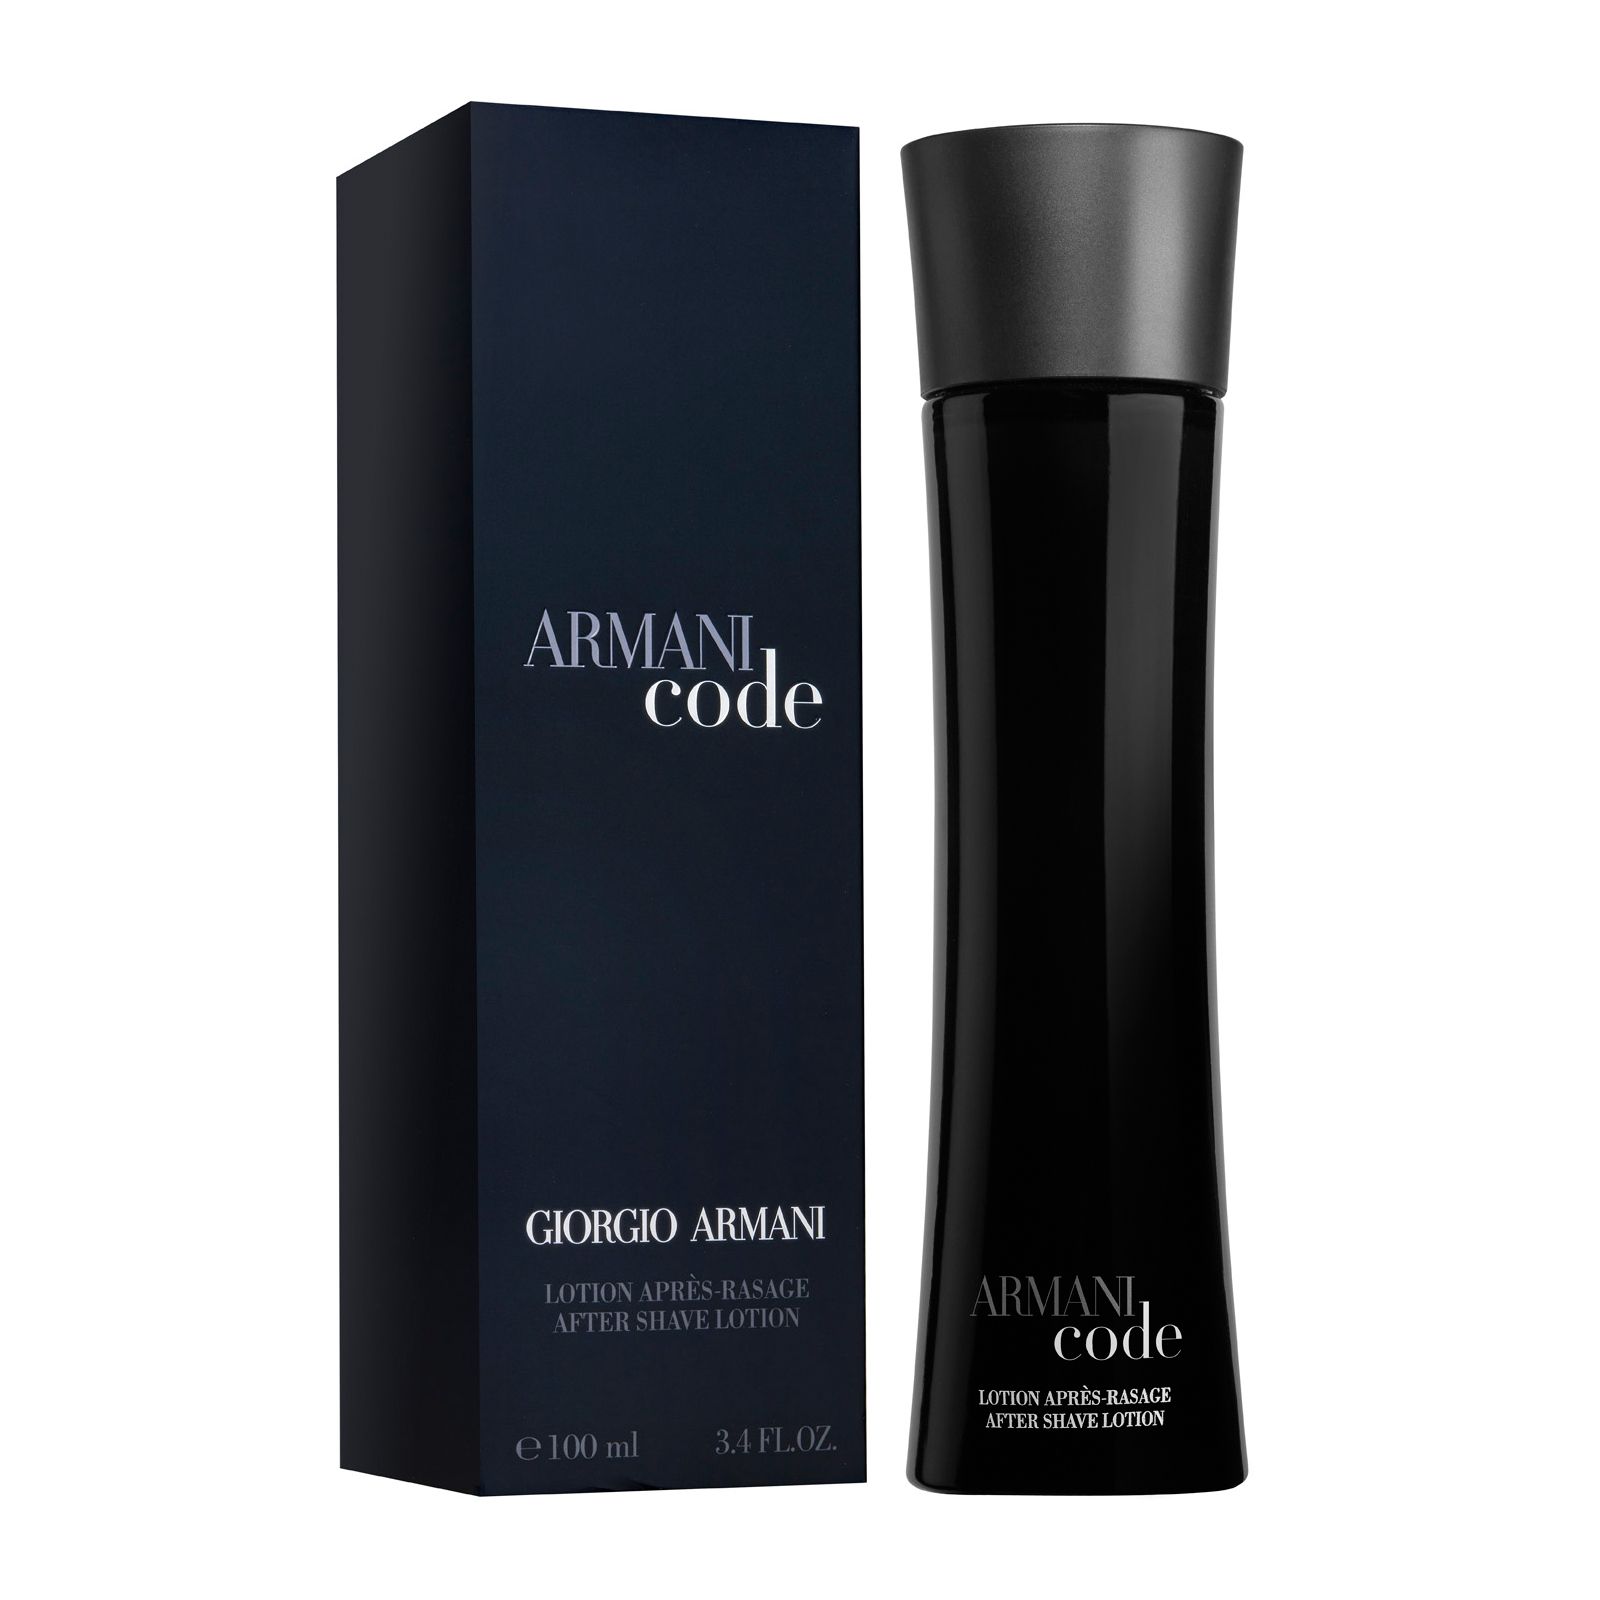 Armani code homme. Armani code 100ml. Armani code мужской 100 ml. Armani code Parfum Giorgio Armani. Армани код Парфюм мужской.